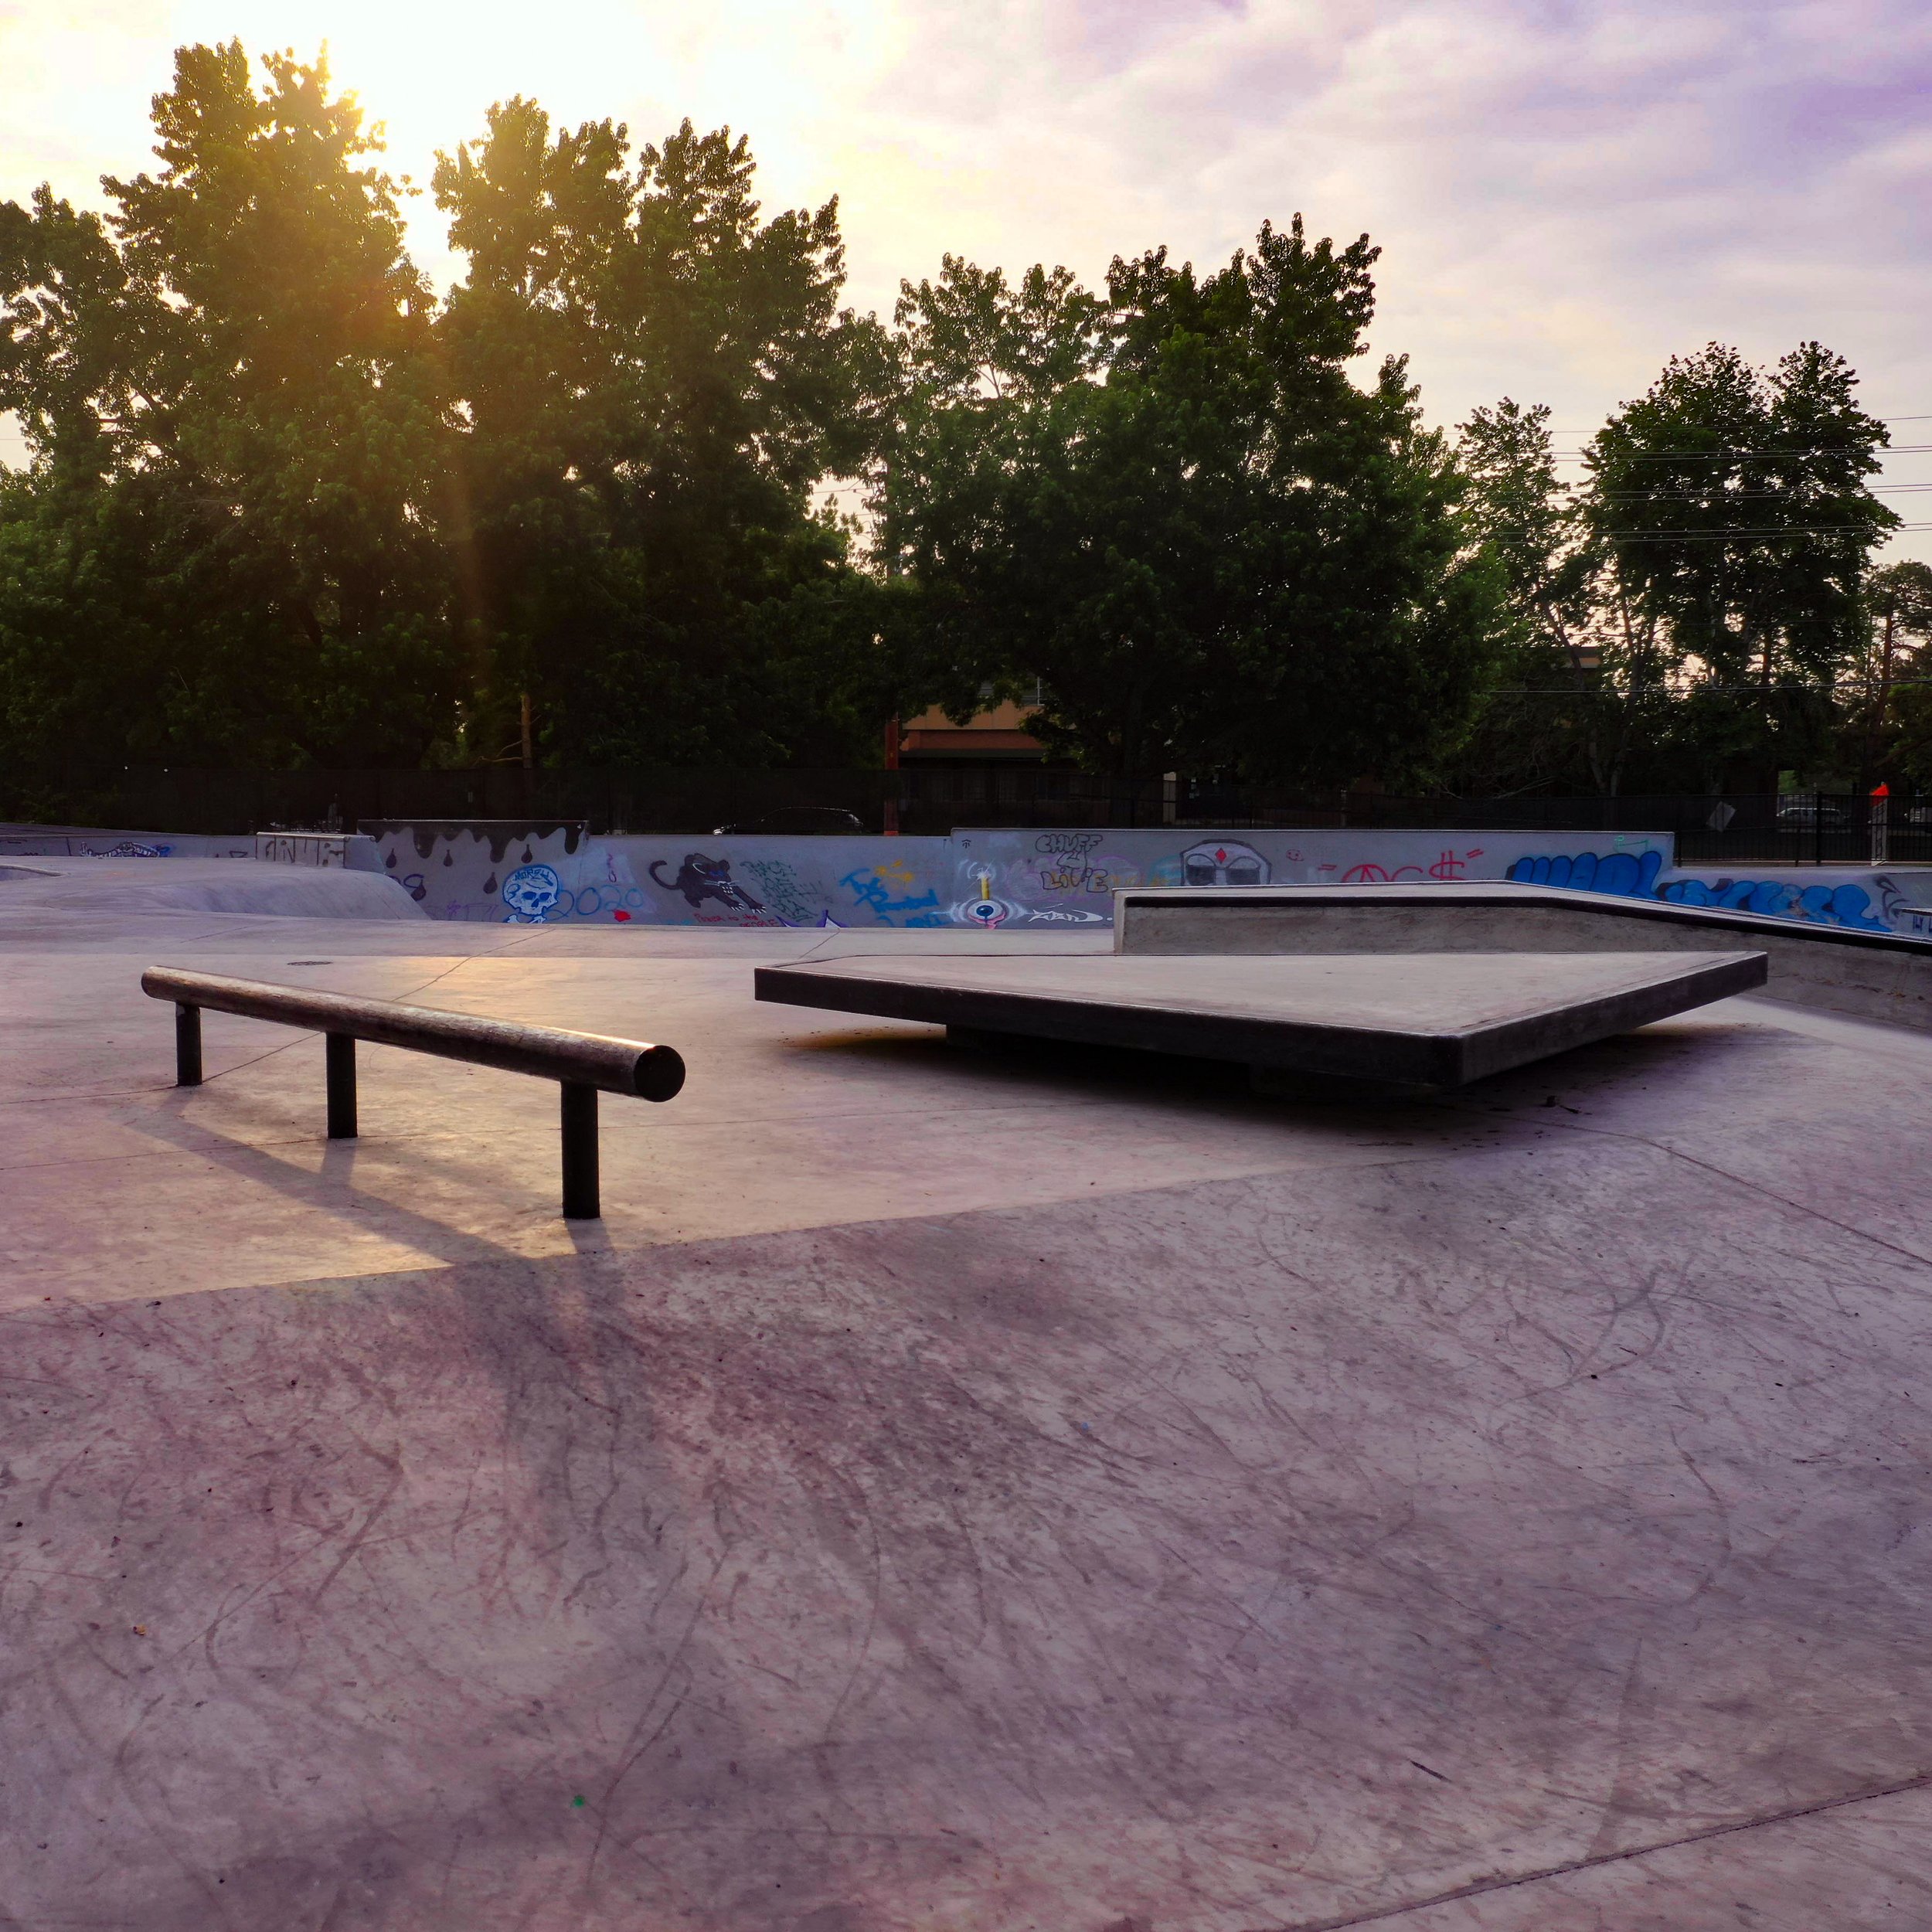 🌲 addition to the old Boulder, Colorado skatepark 😀